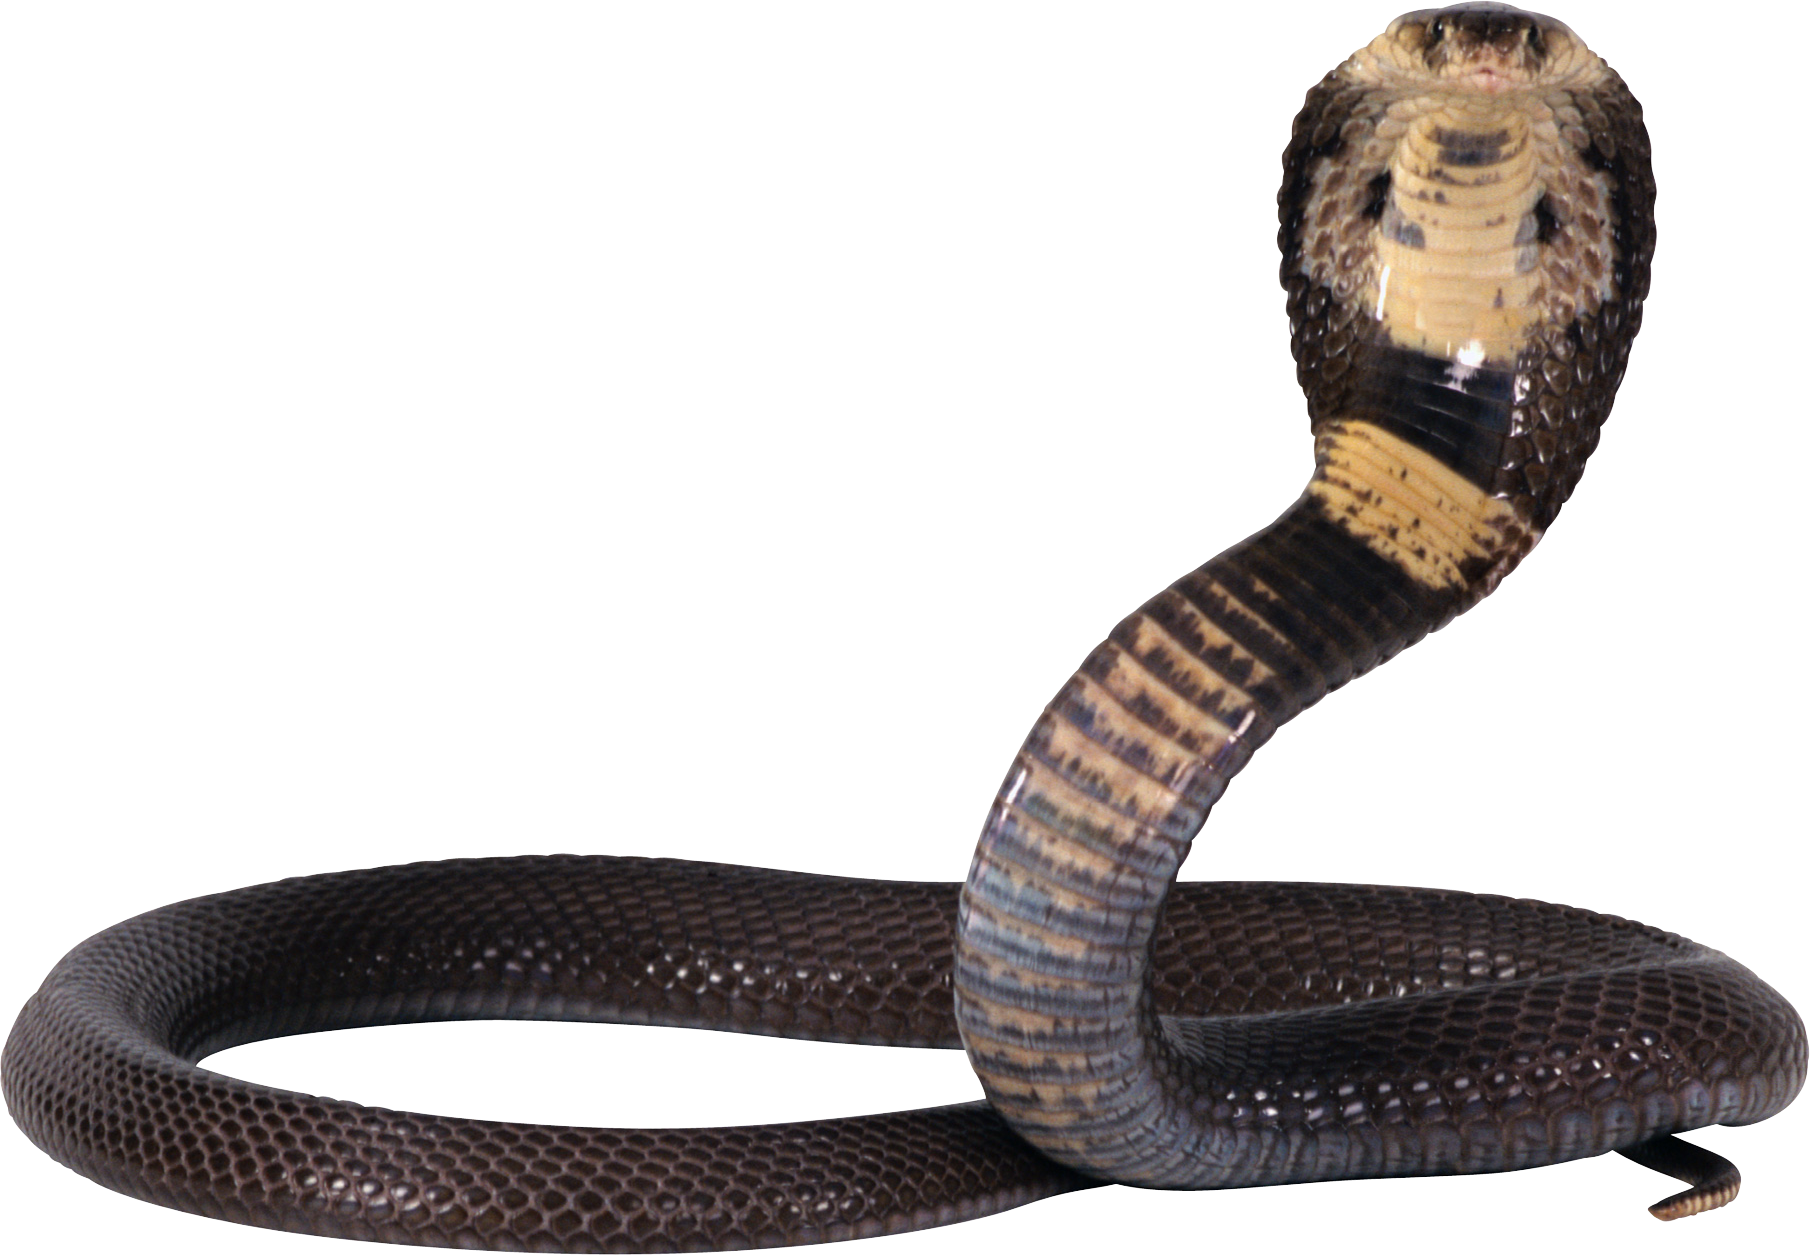 Cobra Snake PNG by LG-Design 